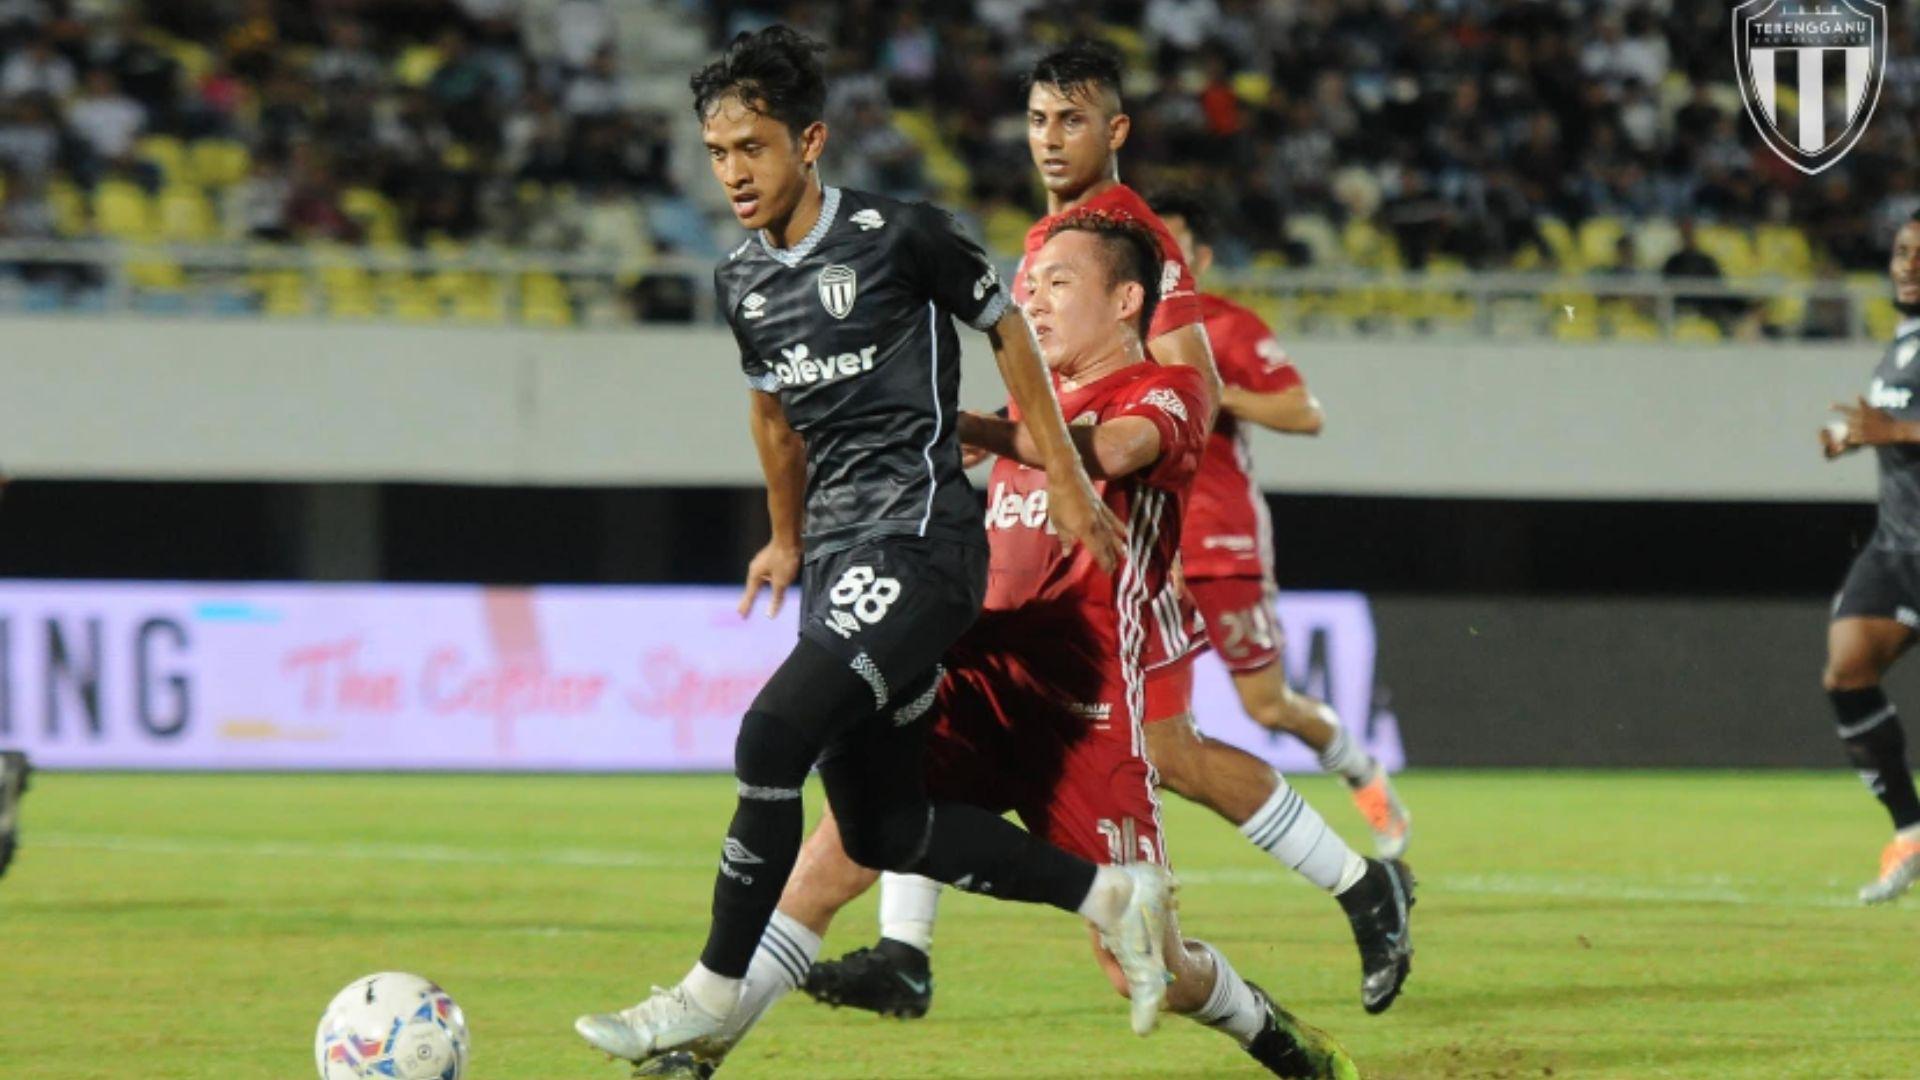 niksharif9 Nik Sharif Catat Gol Kedua Peribadi Bersama Terengganu